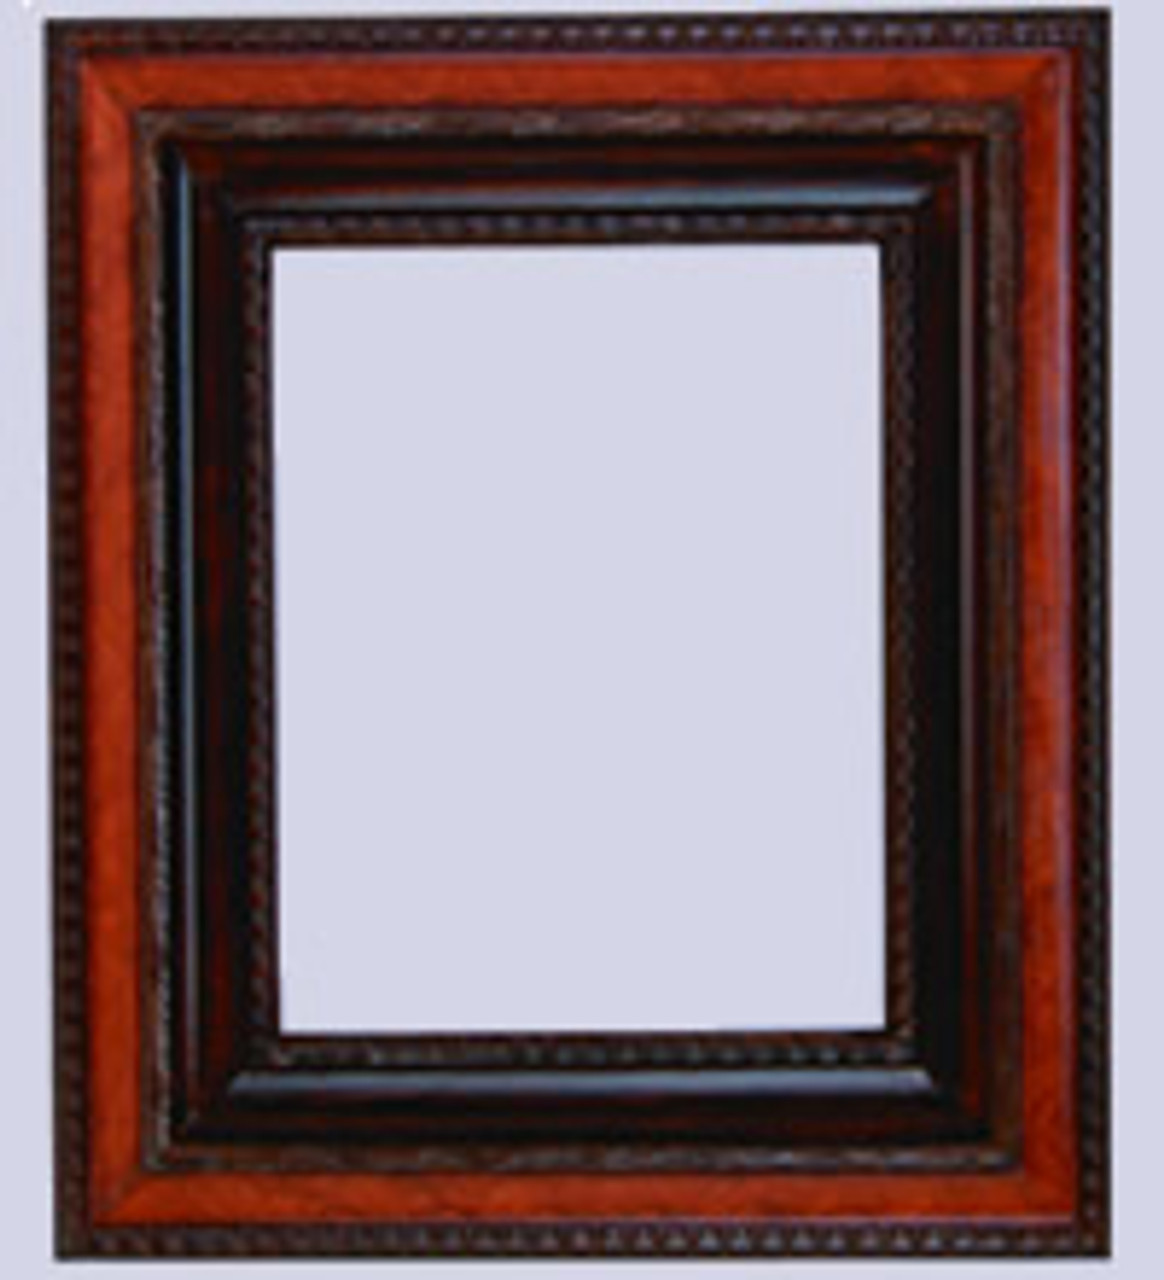 3 Inch Tuscani Wood Frame :96x96*